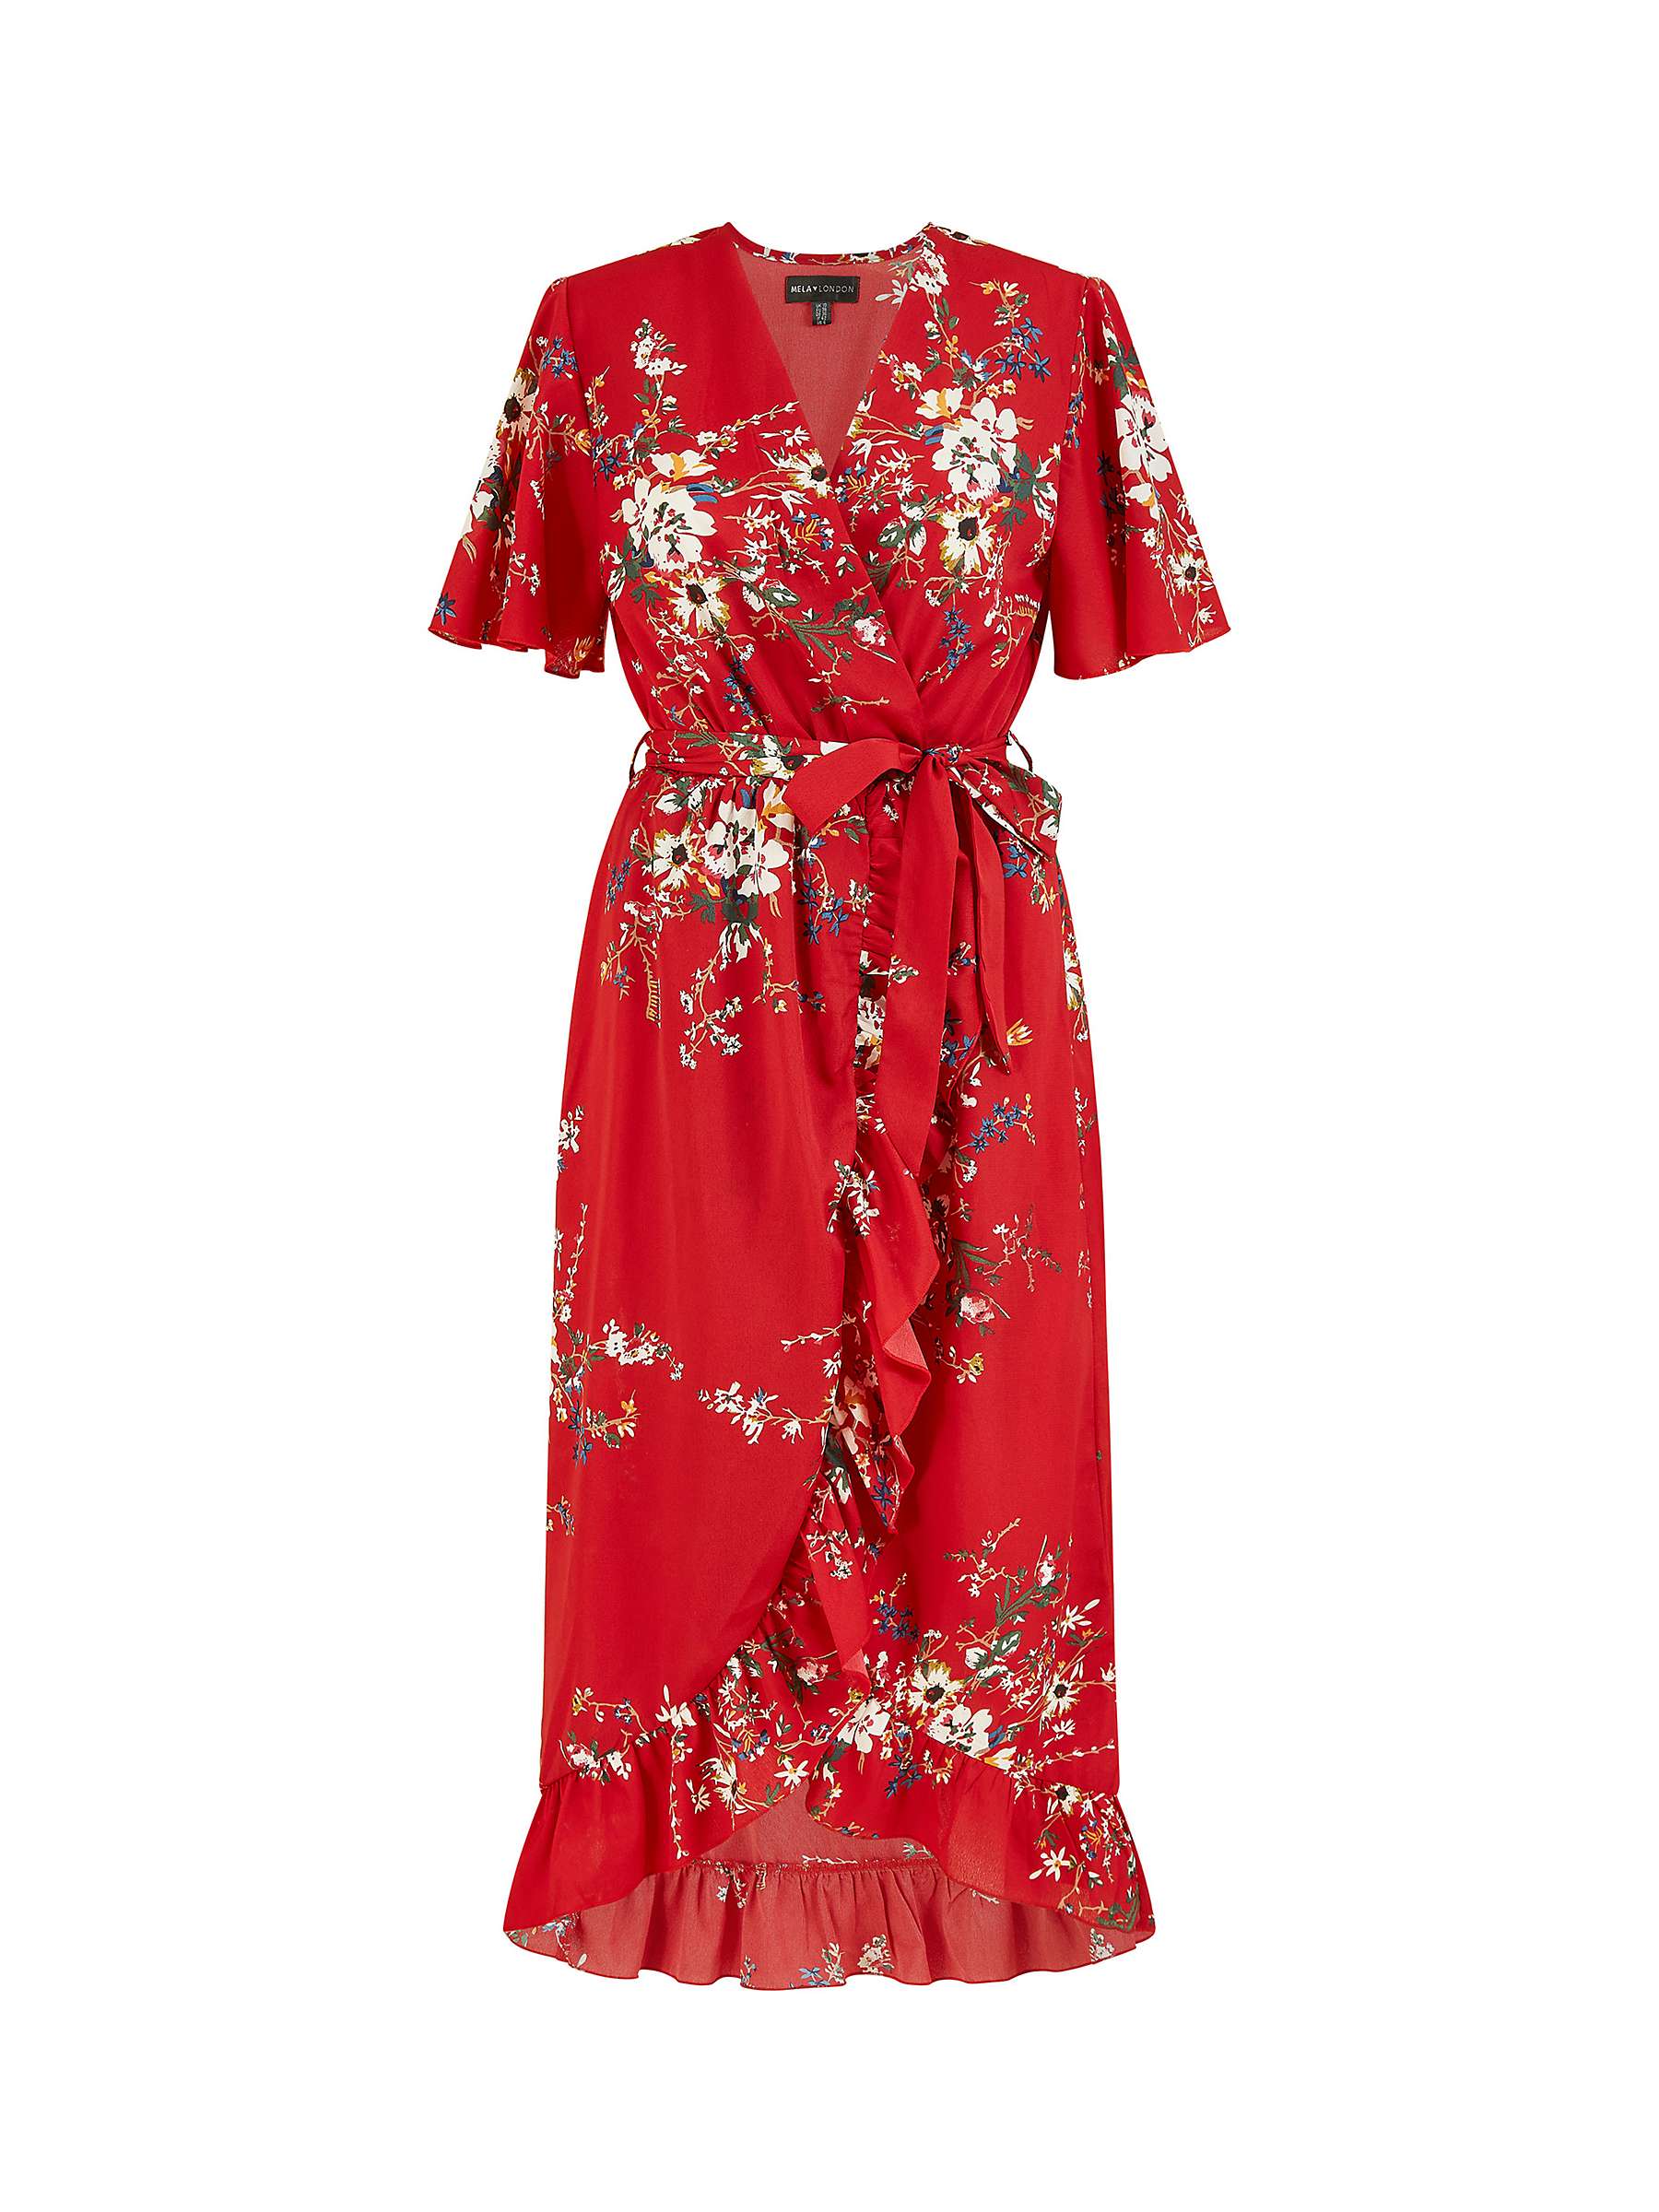 Mela London Floral Print Dip Hem Wrap Midi Dress, Red at John Lewis ...